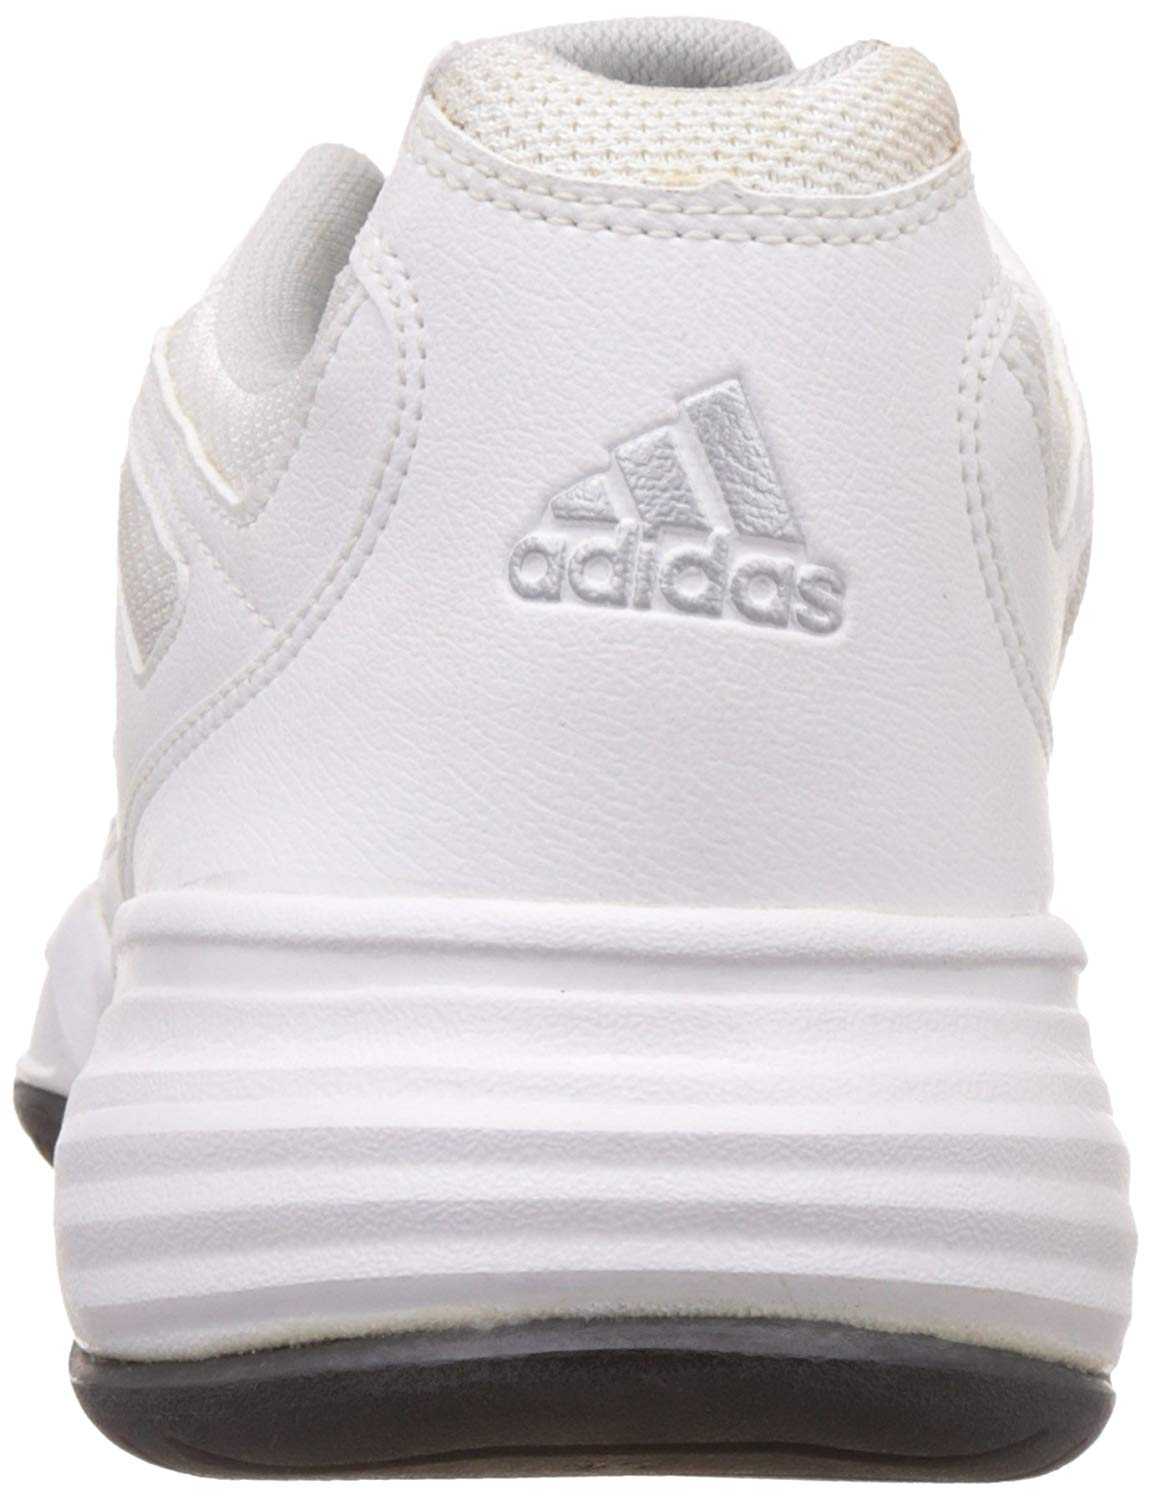 Adidas Men Sports Shoes Swerve str D70401